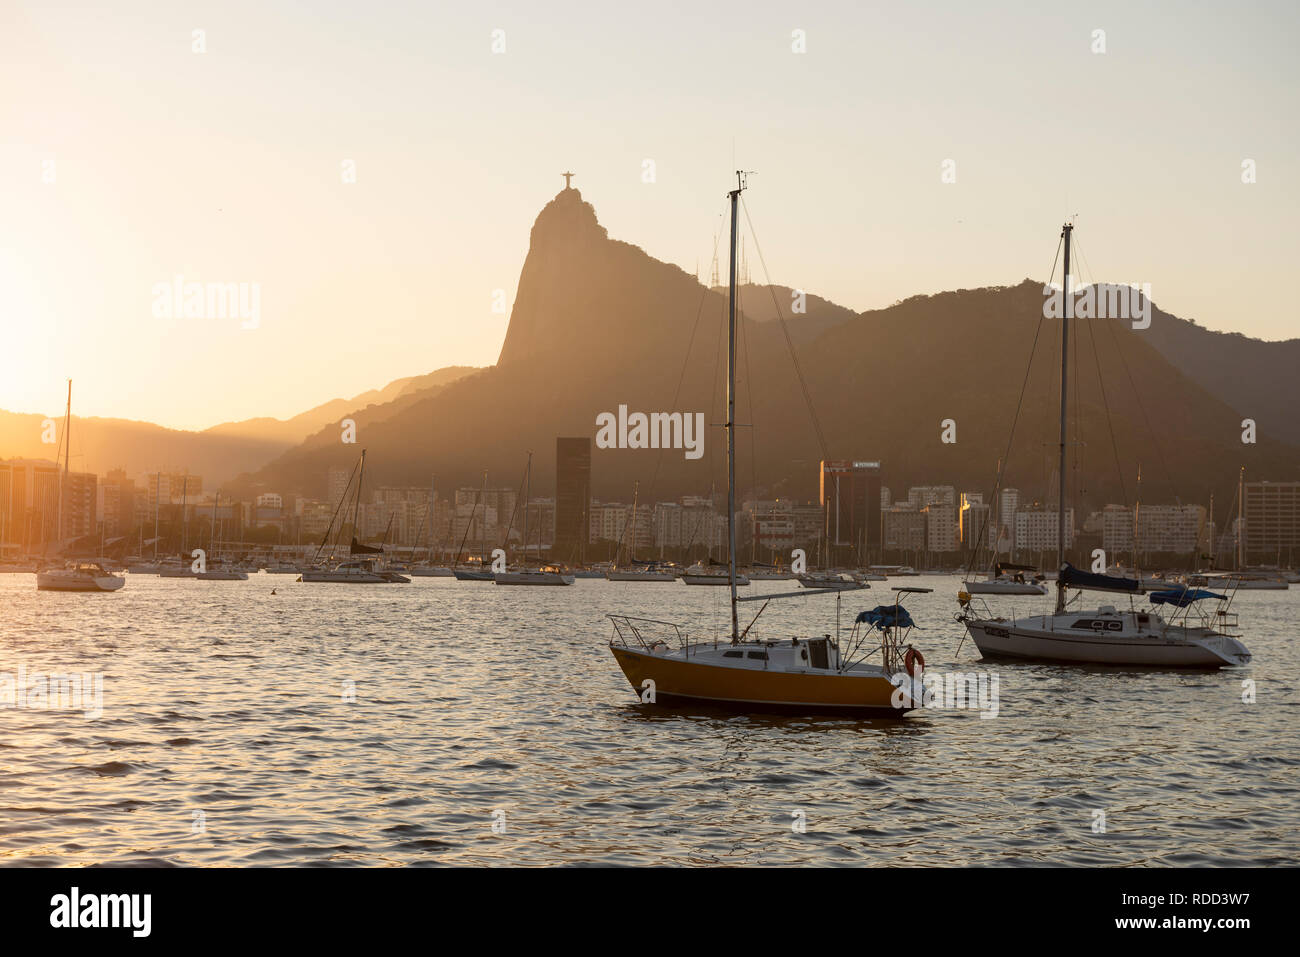 Boats moored at Baía de Guanabara, Rio de Janeiro, Brazil Stock Photo